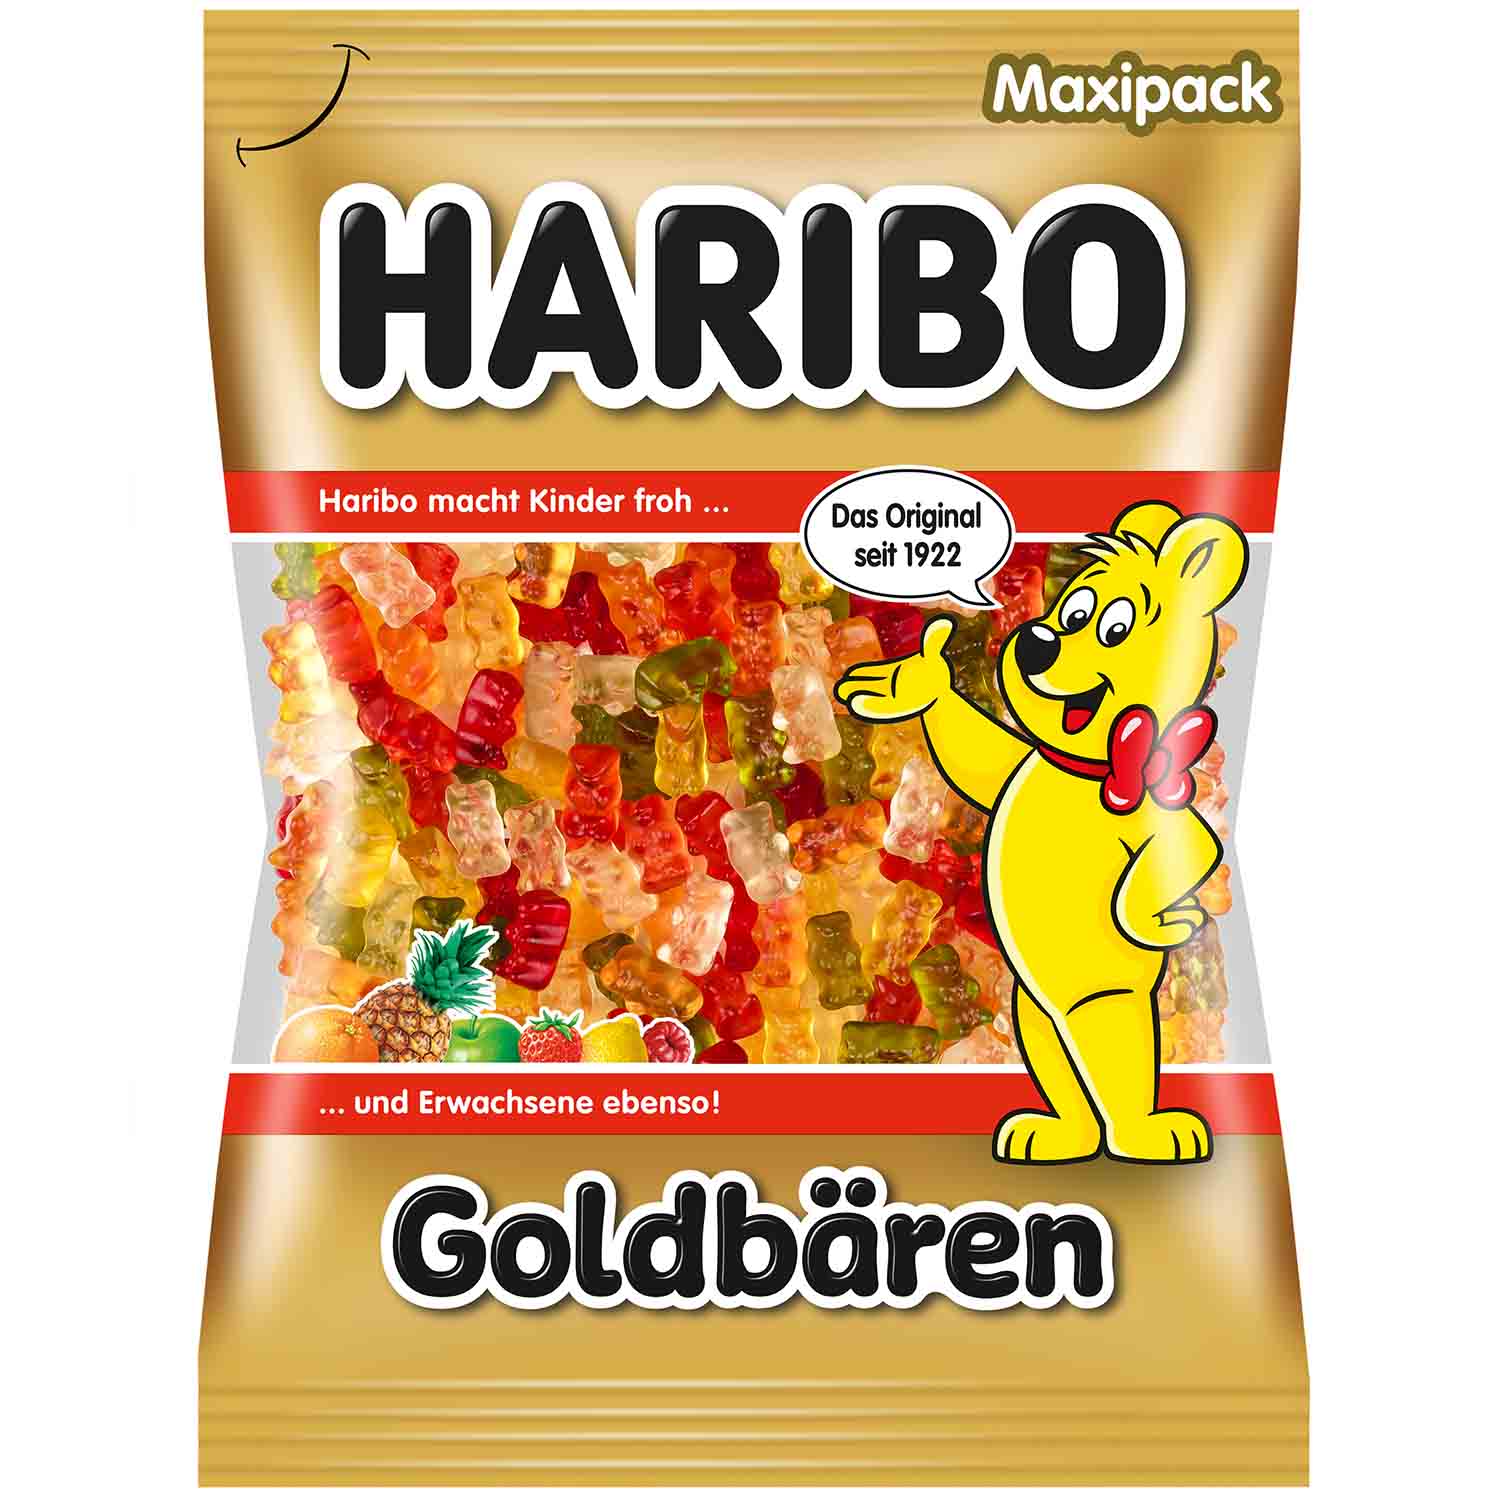 Haribo Goldbären 320g